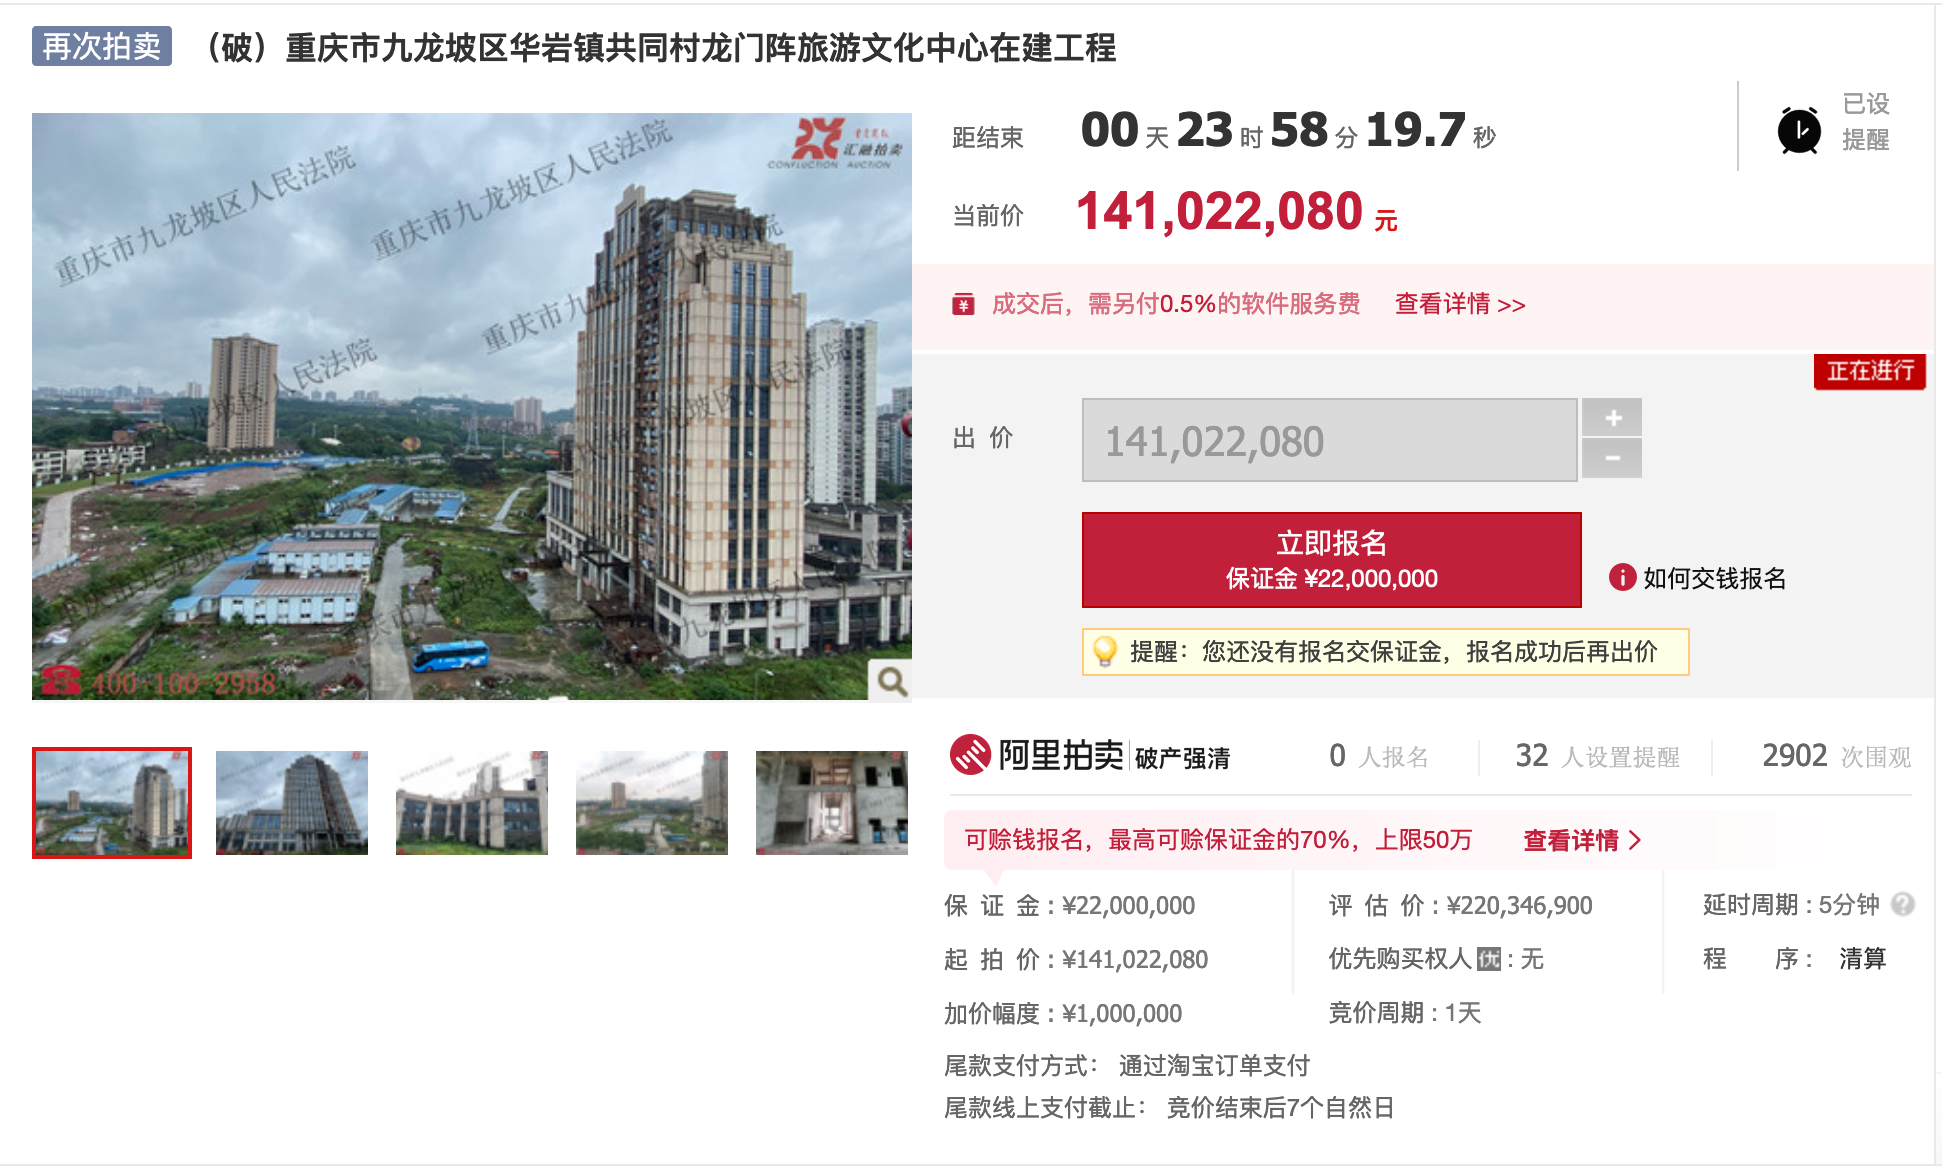 重庆龙门阵景区项目第三次拍卖 起拍价较首次拍卖已降36%